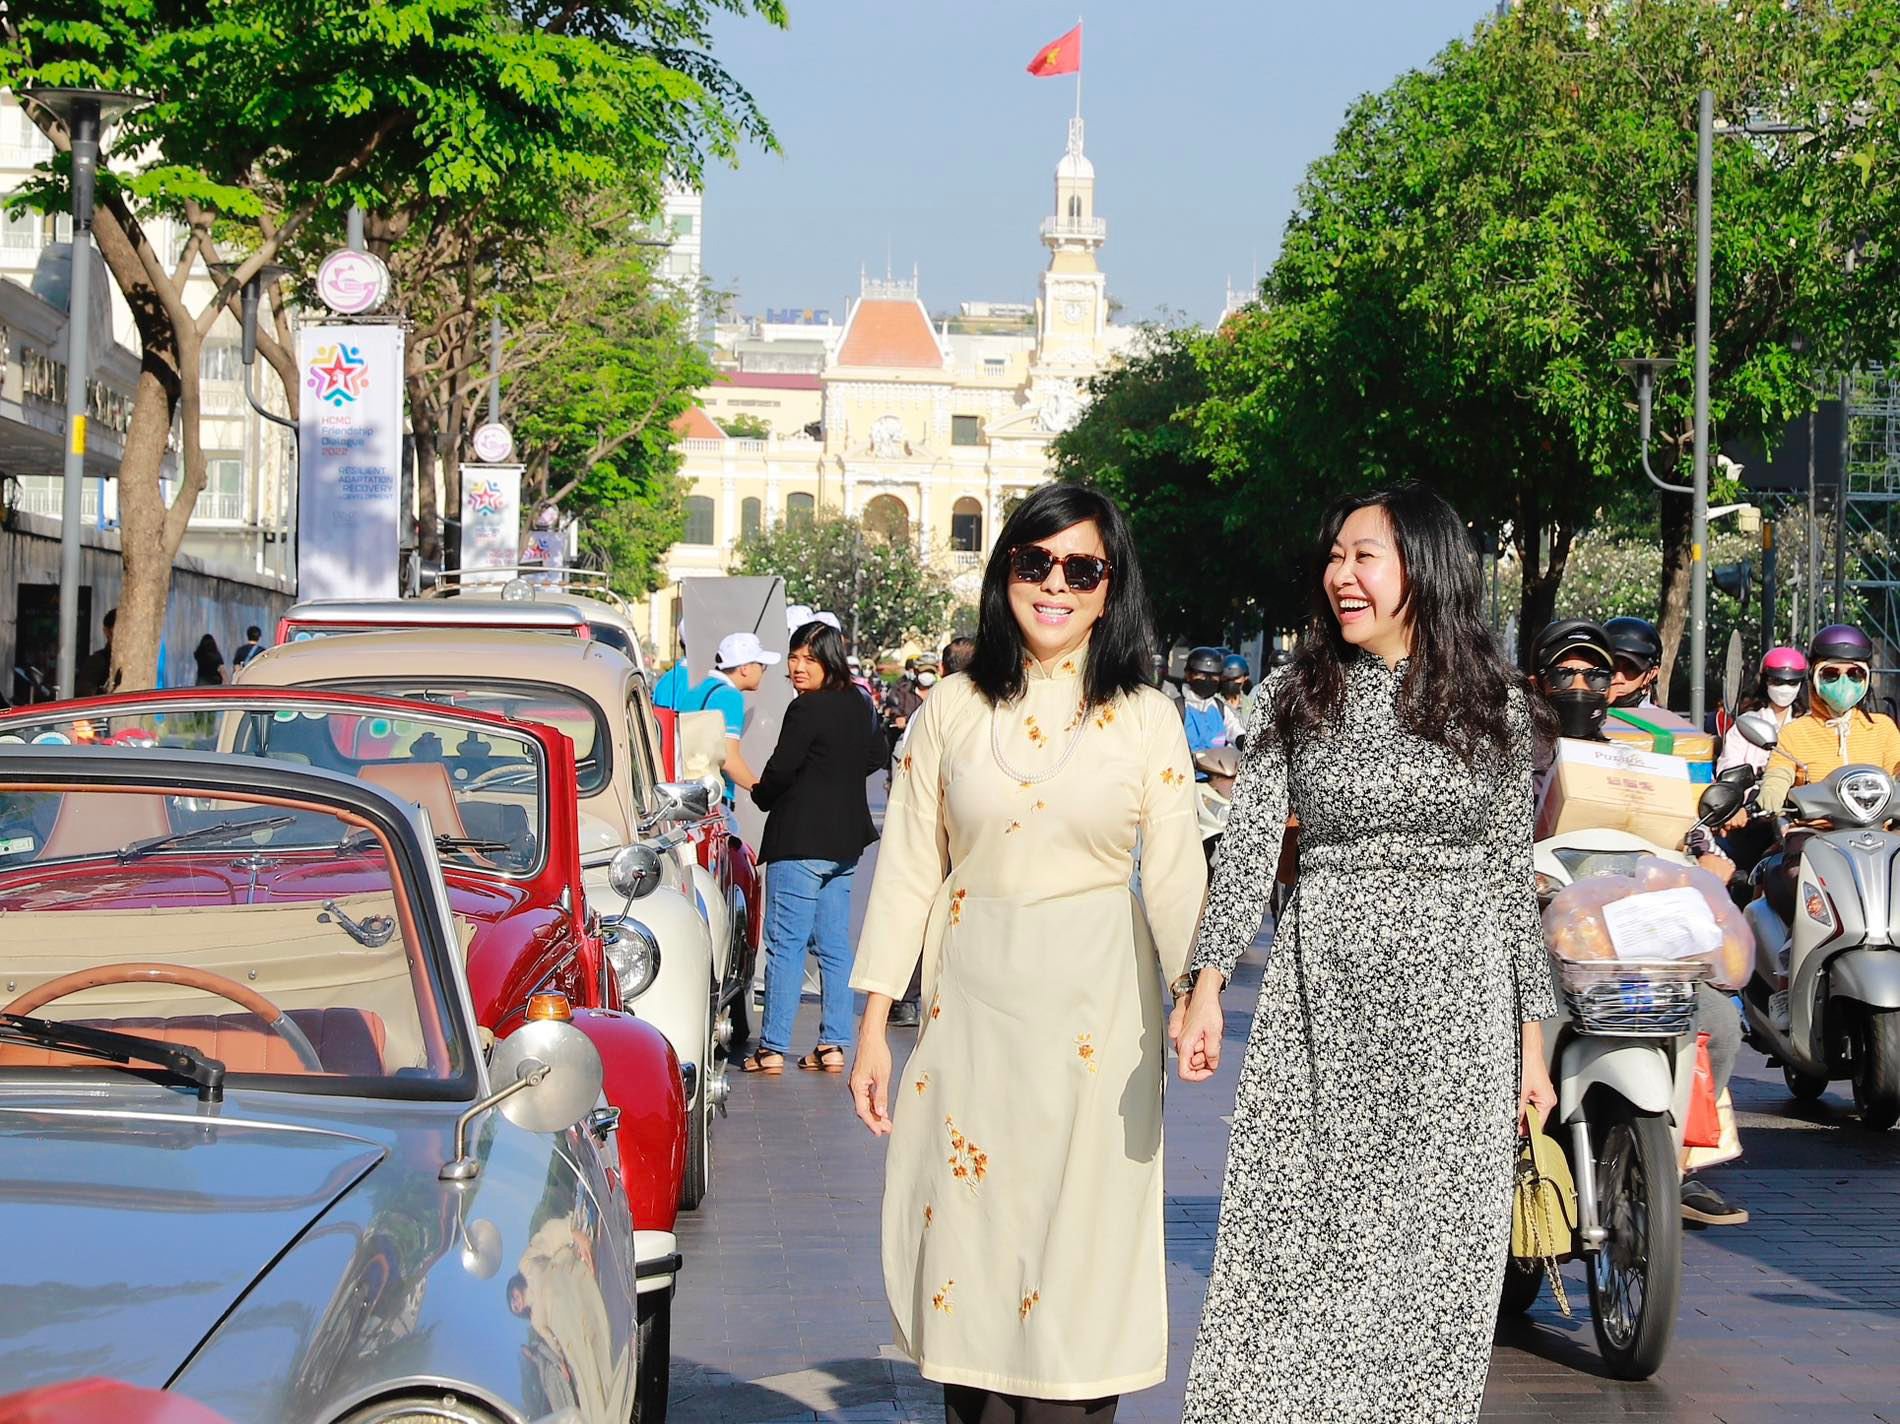 Hoạt động nhằm hưởng ứng Ngày Di sản Văn hoá Việt Nam 23/11 và Tuần lễ Du lịch TP Hồ Chí Minh lần thứ 2 (5/12 – 11/12)